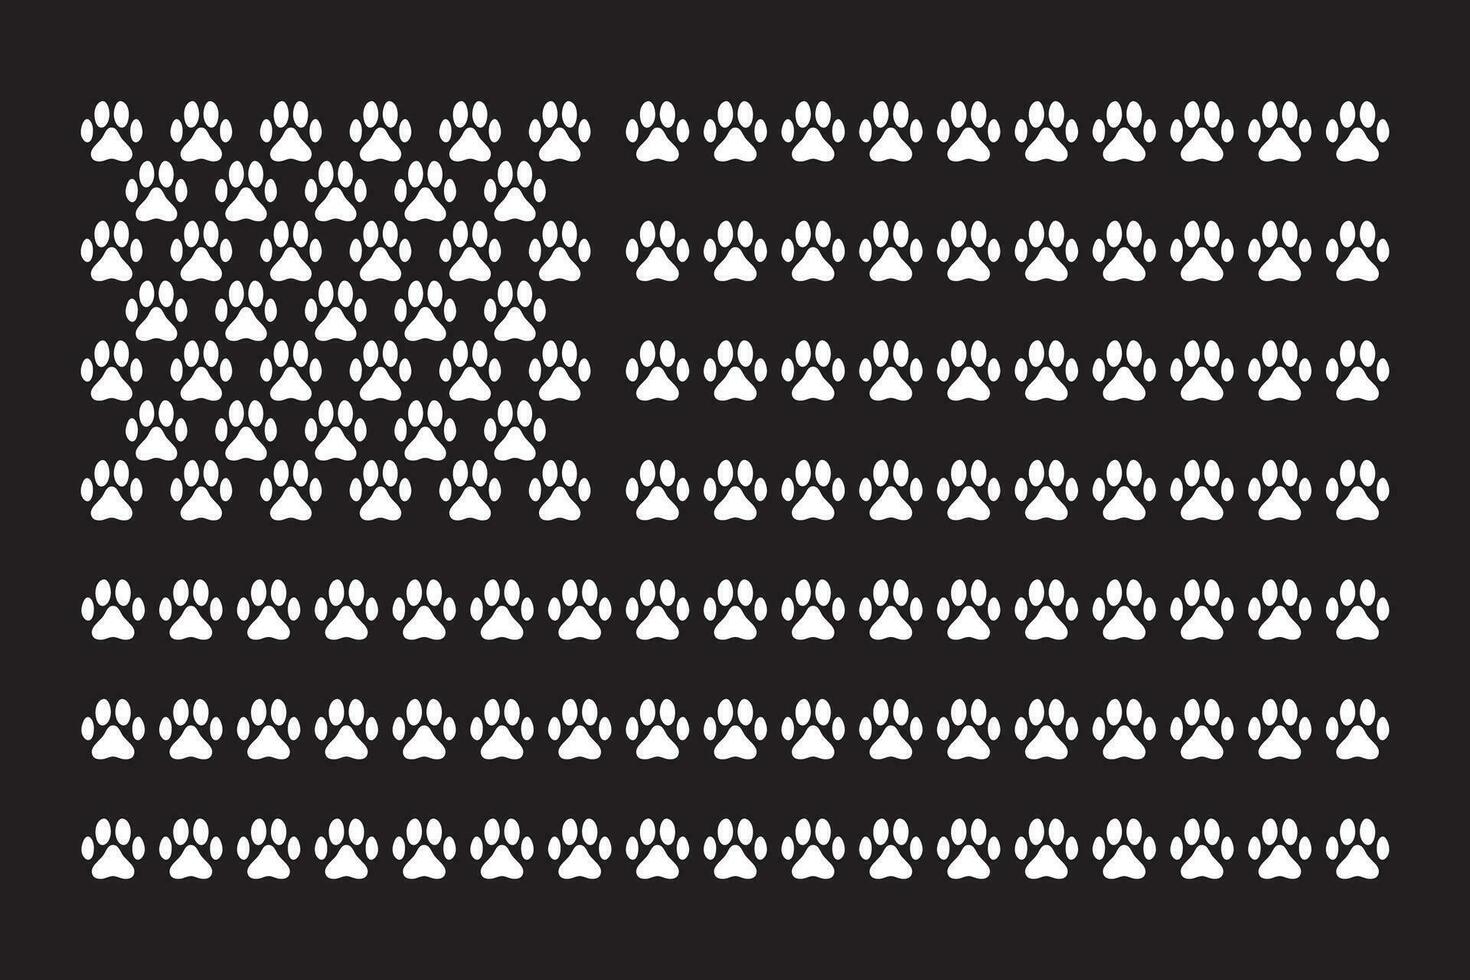 tillverkad ut av Tass grafik, de amerikan flagga vektor